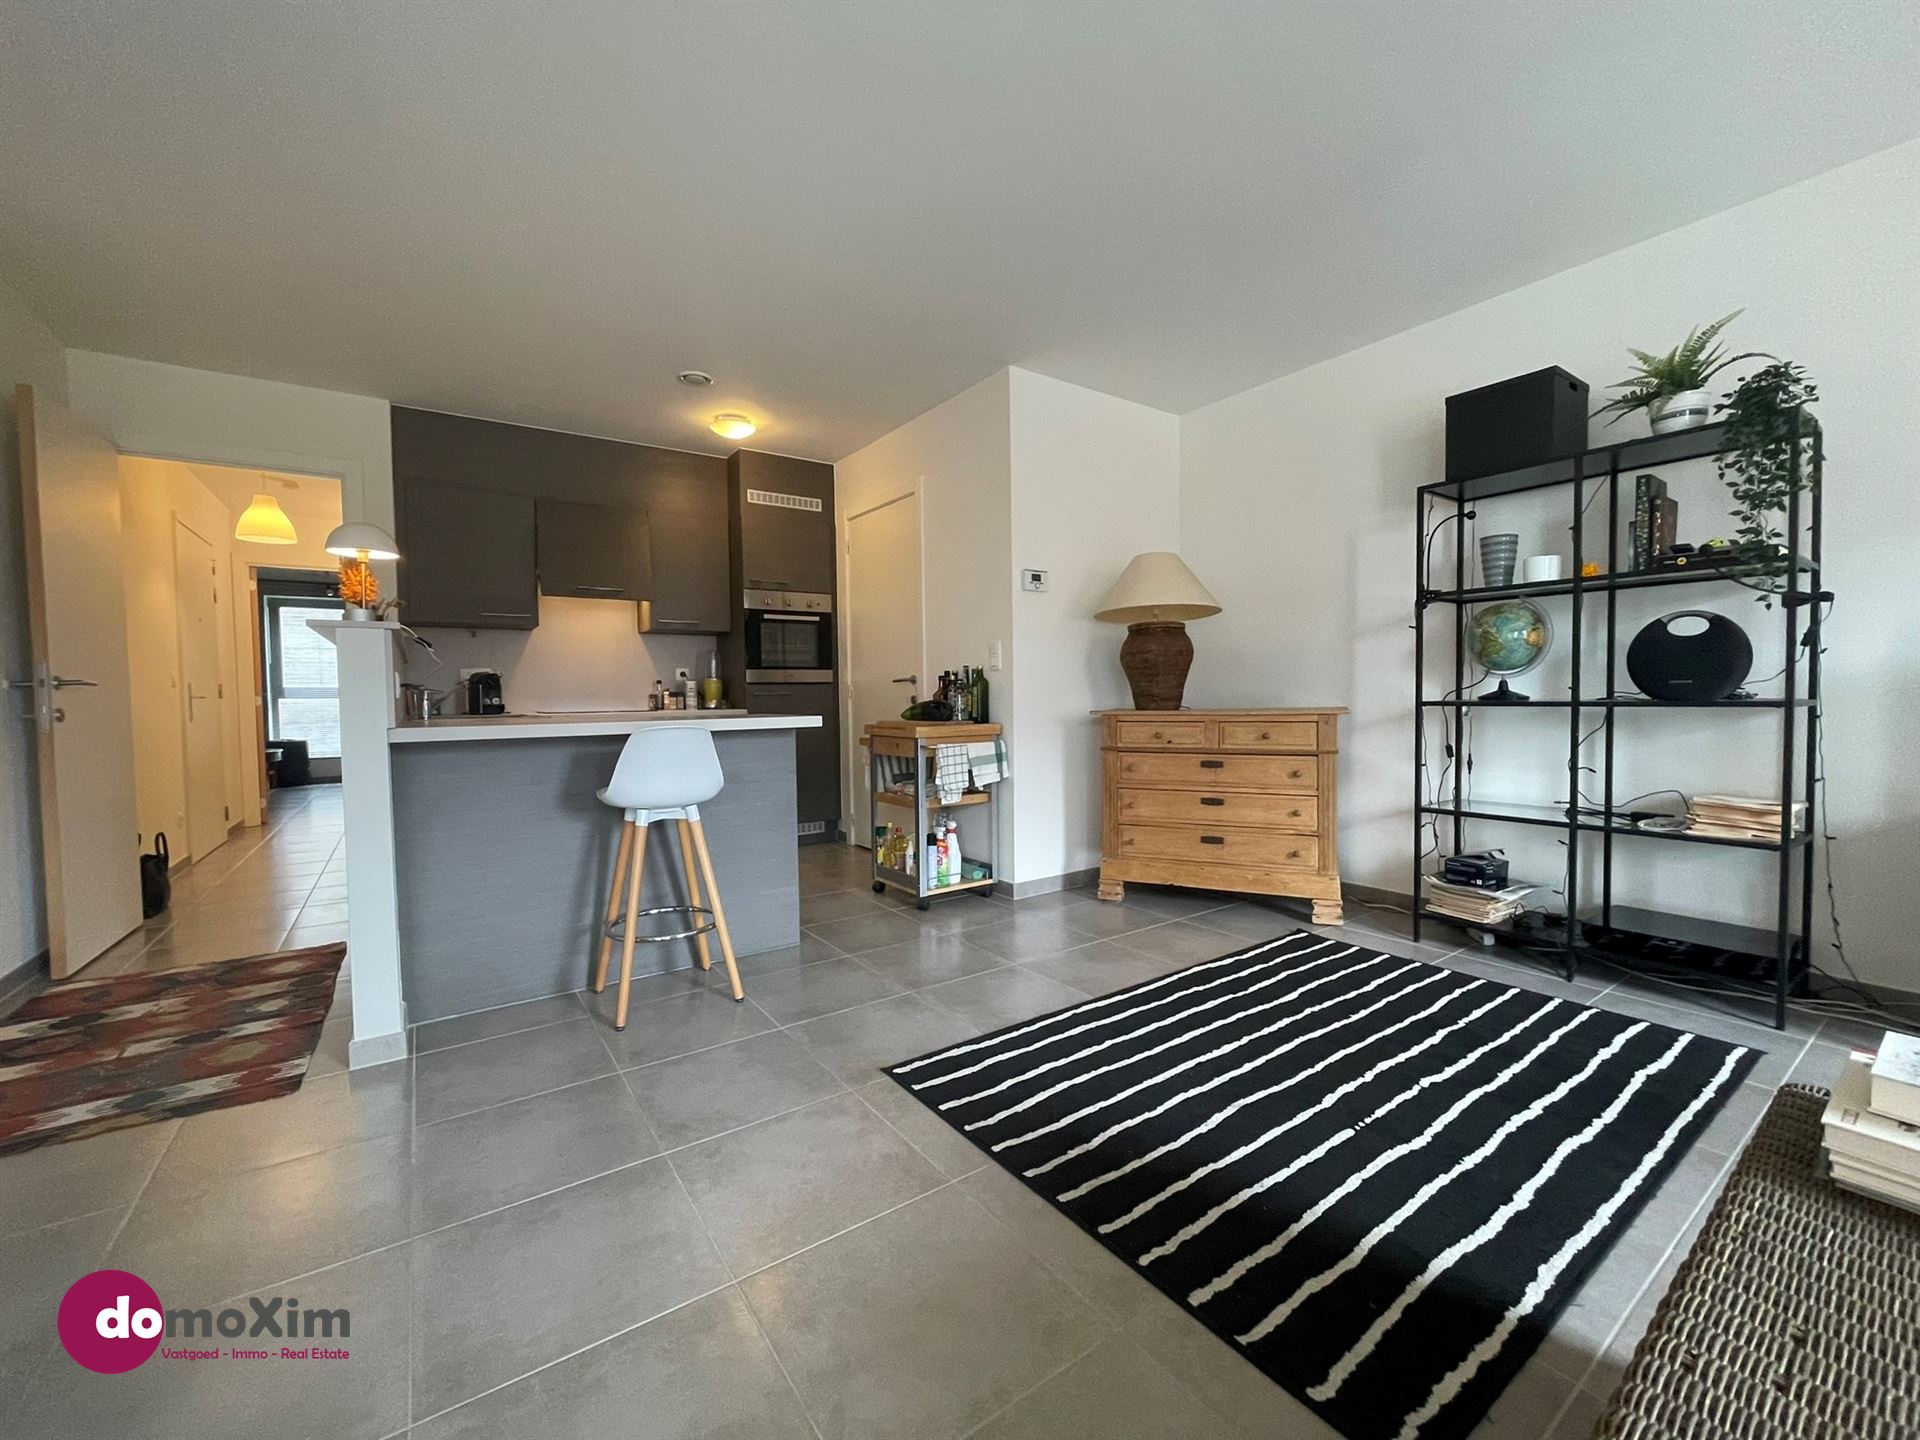 Lichtrijk appartement met 2 slaapkamers in hartje Boortmeerbeek foto 5